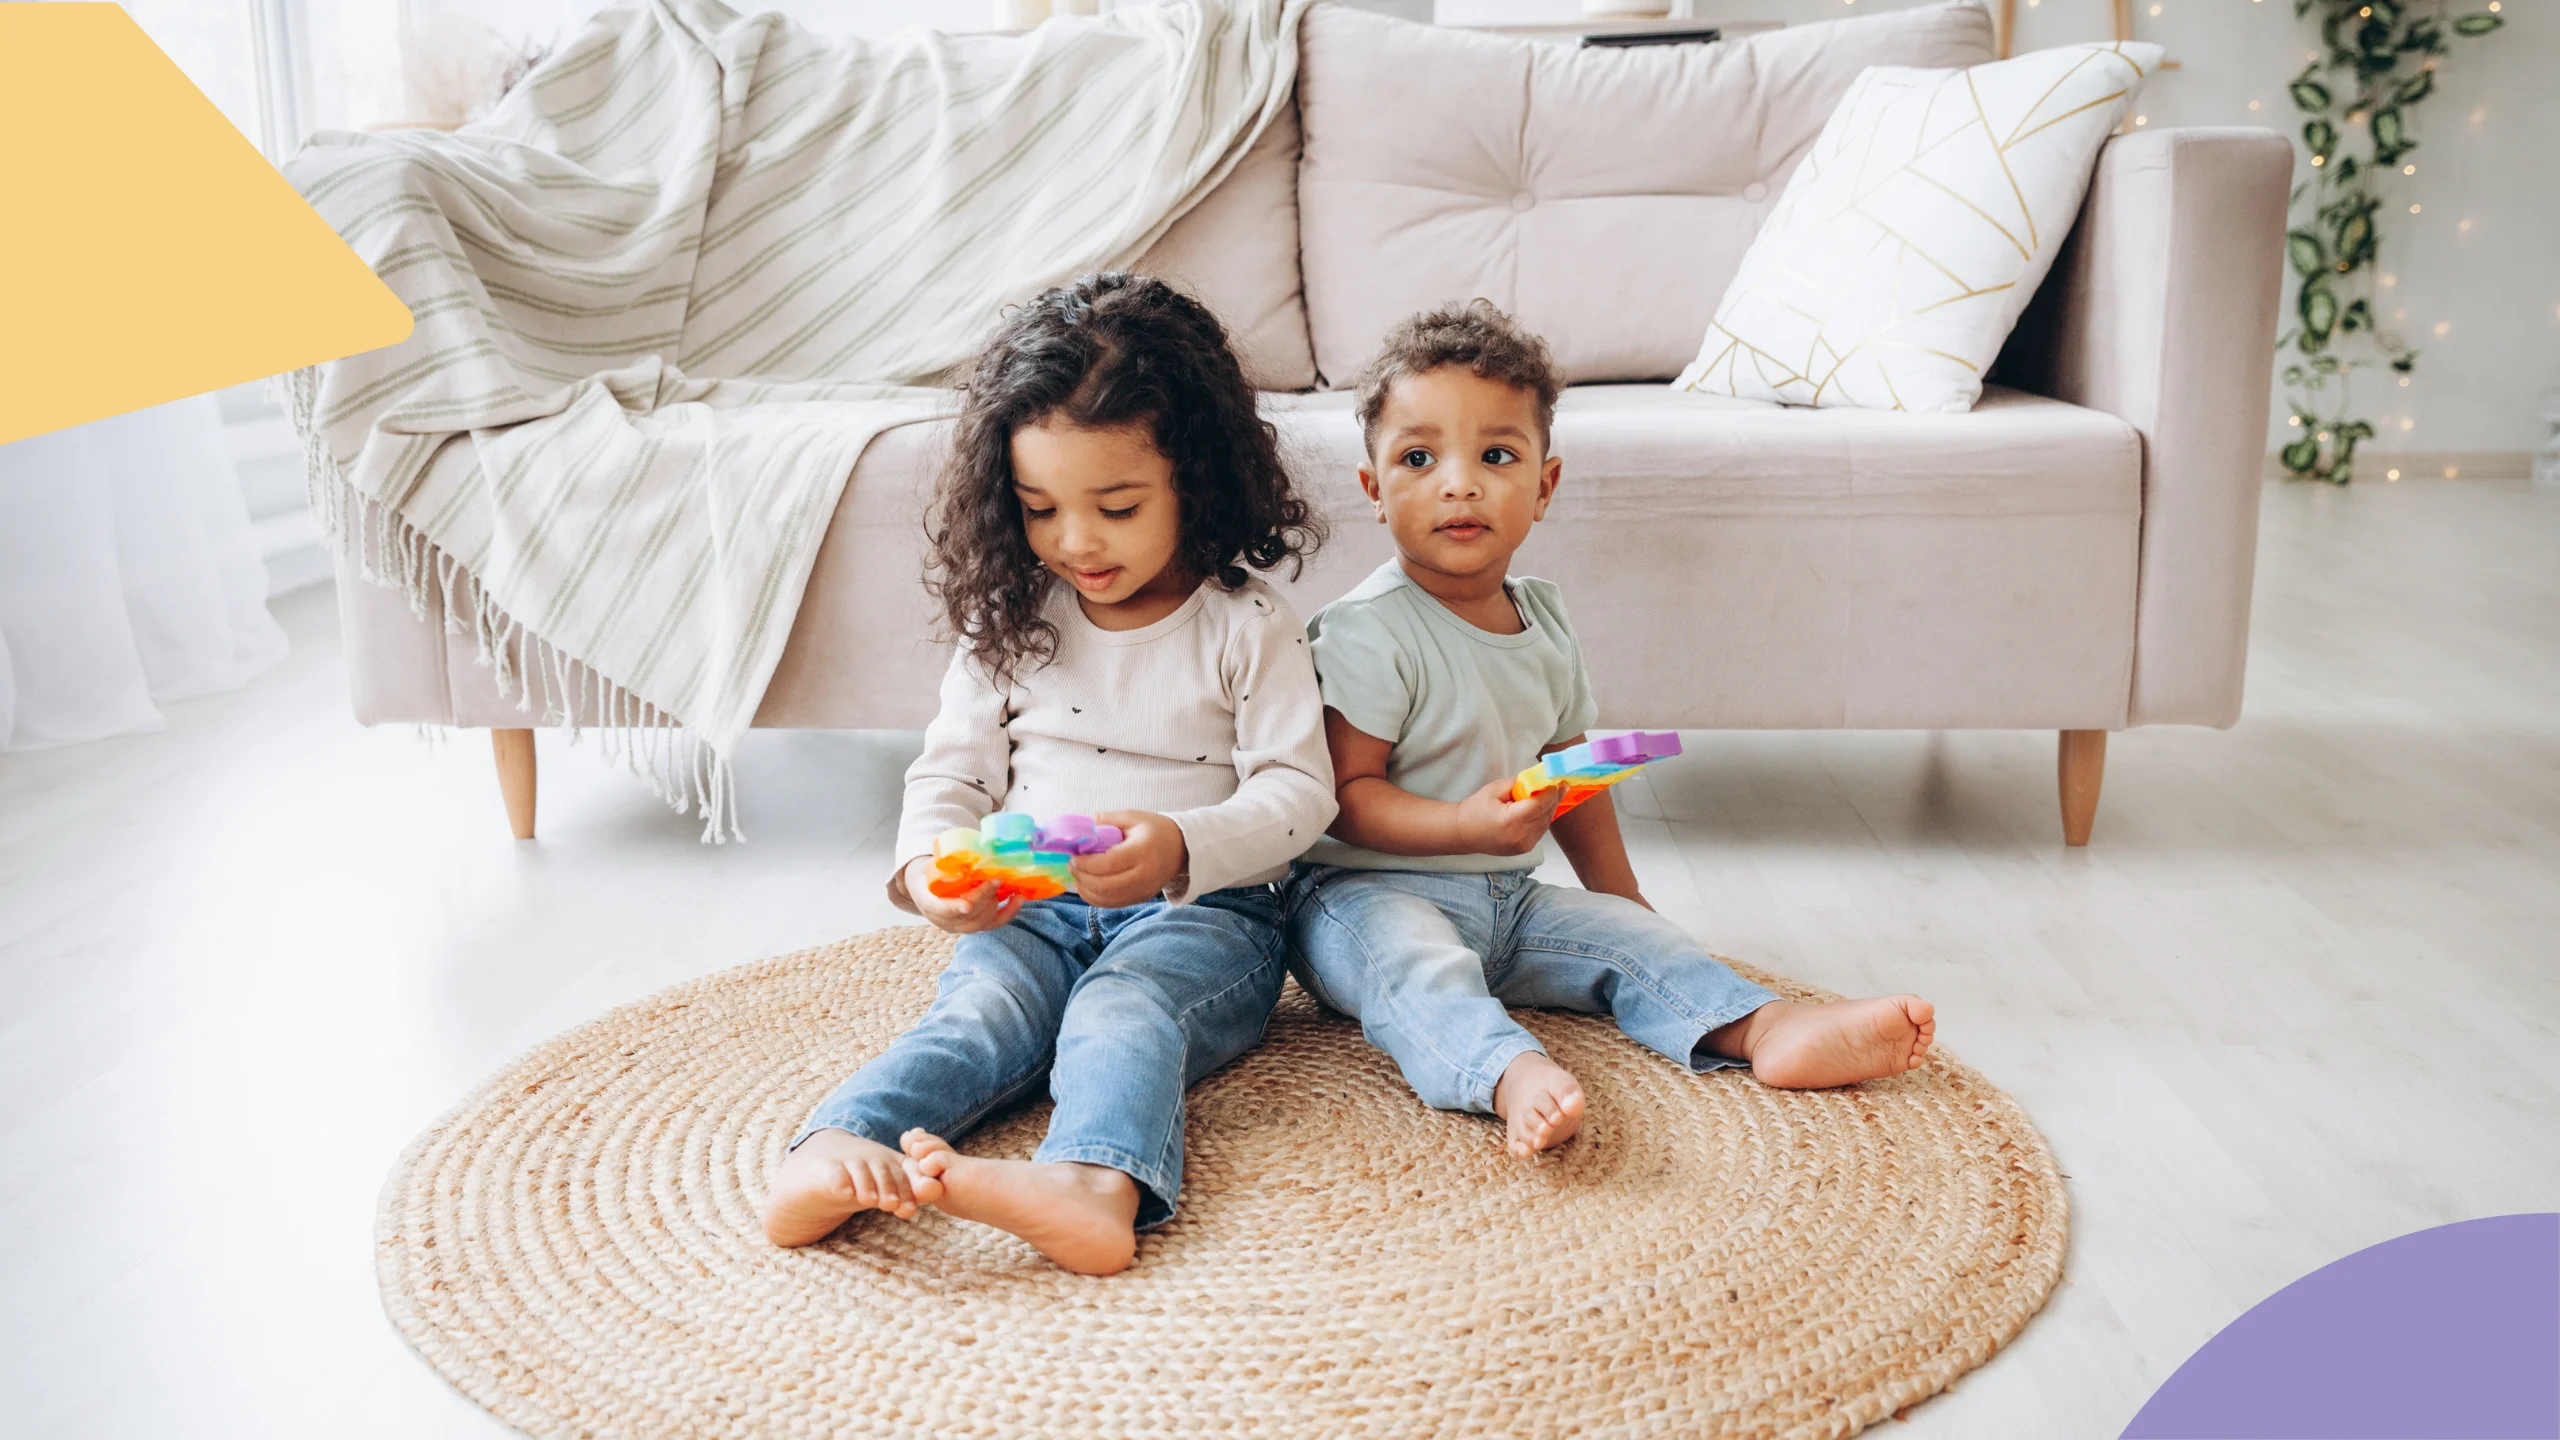 dois irmãos negros aparecem sentados no chão em cima de um tapete. ambos estão com brinquedos coloridos nas mãos